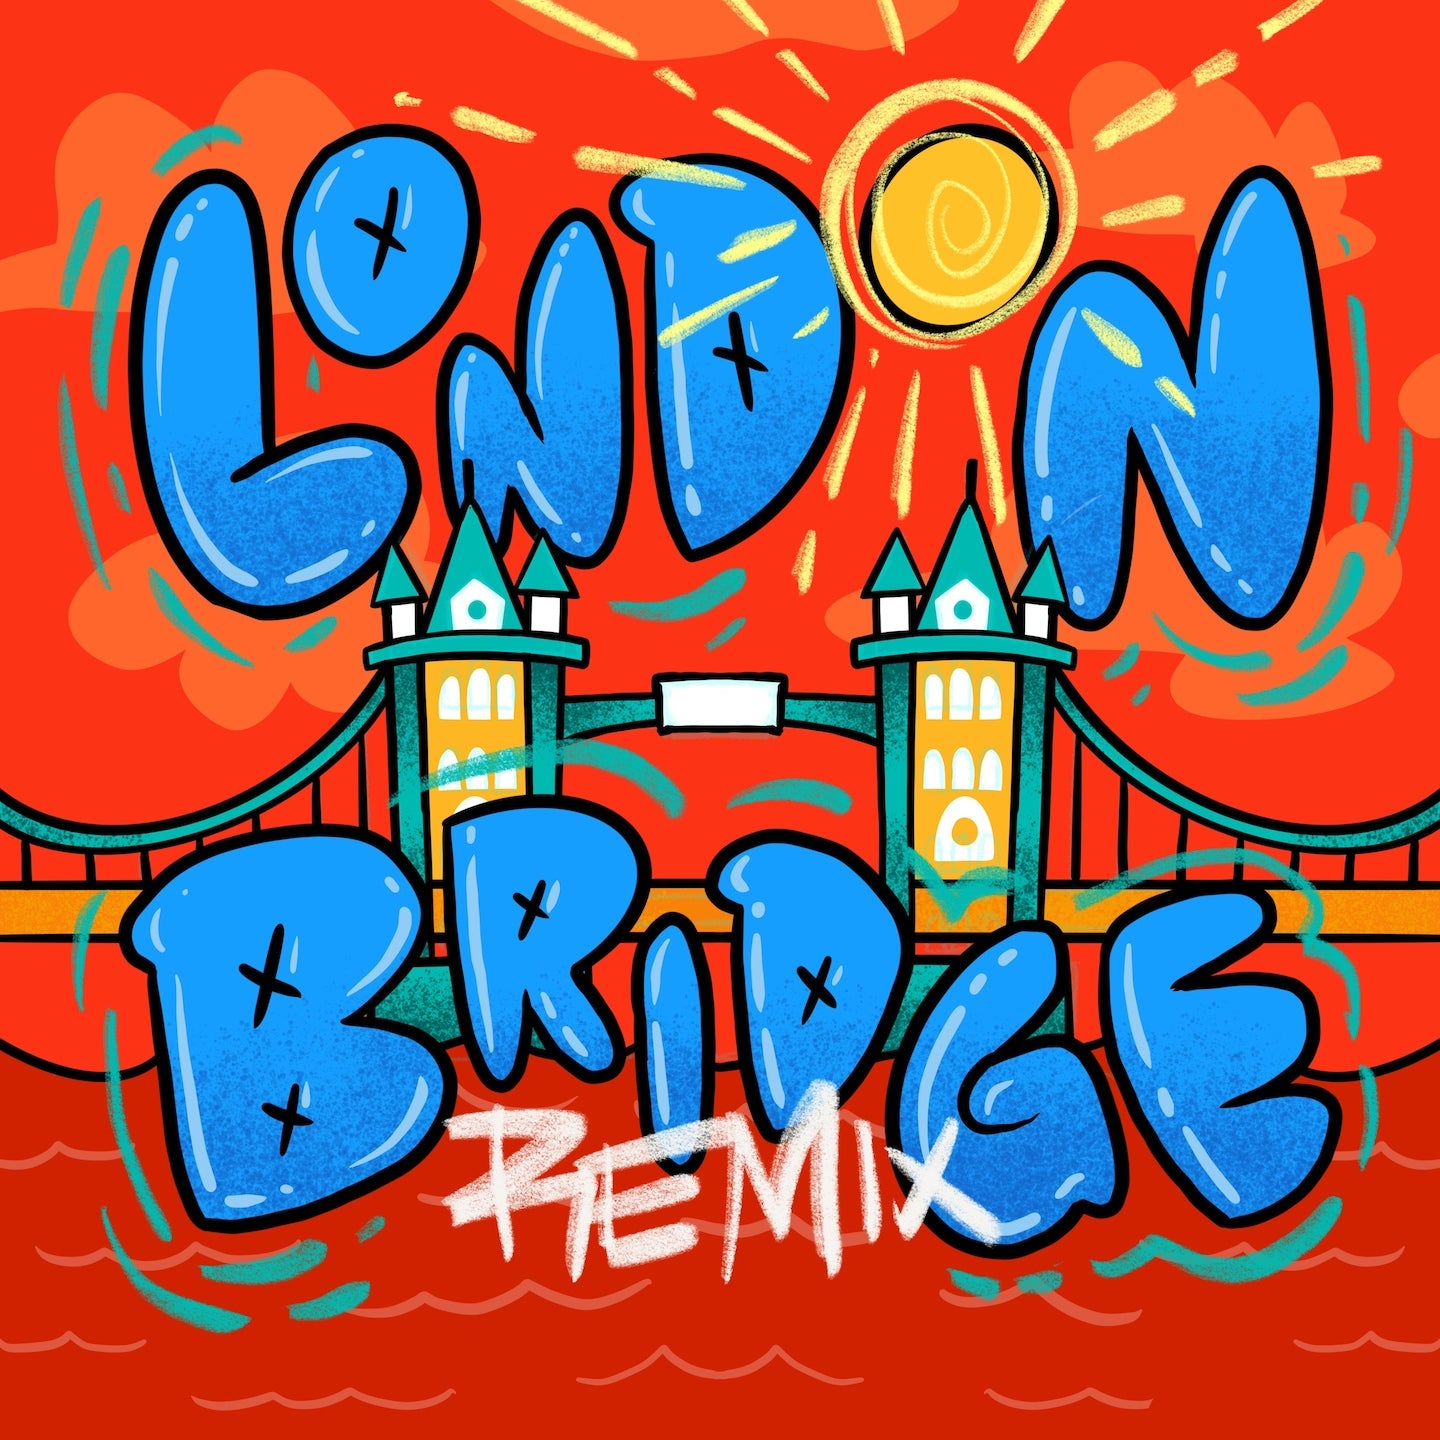 London Bridges Remix